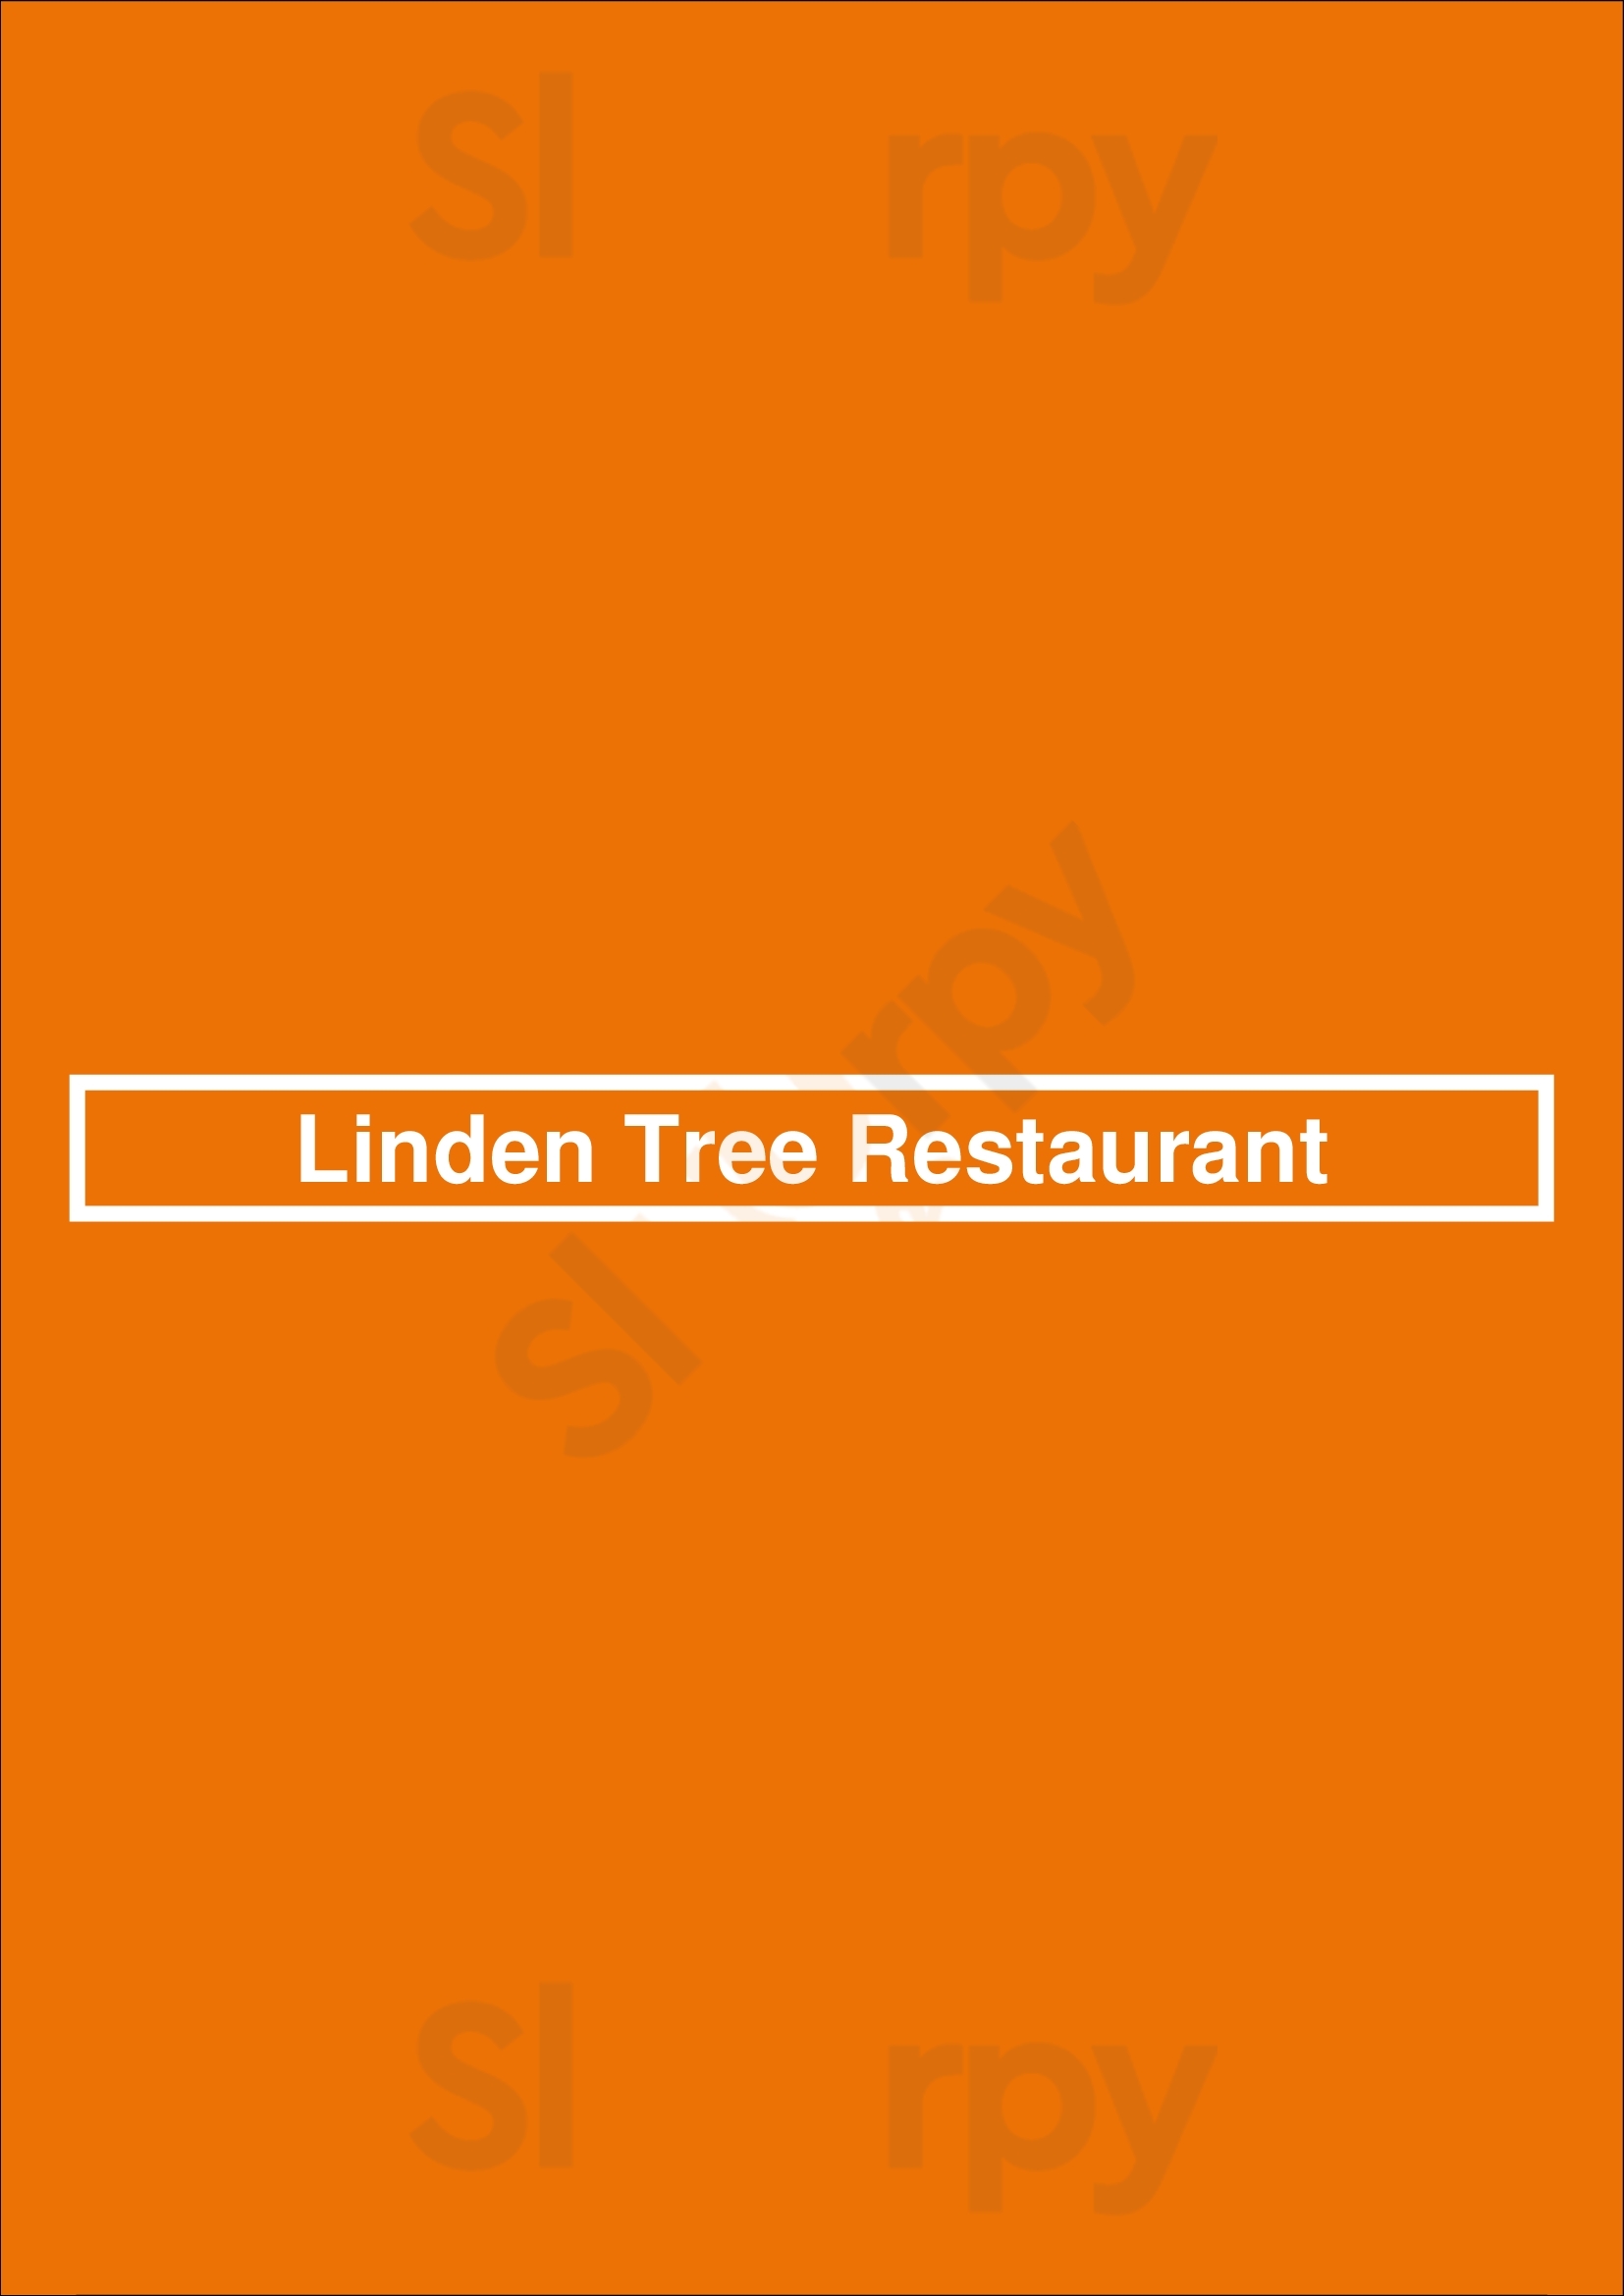 Linden Tree Restaurant Maynooth Menu - 1